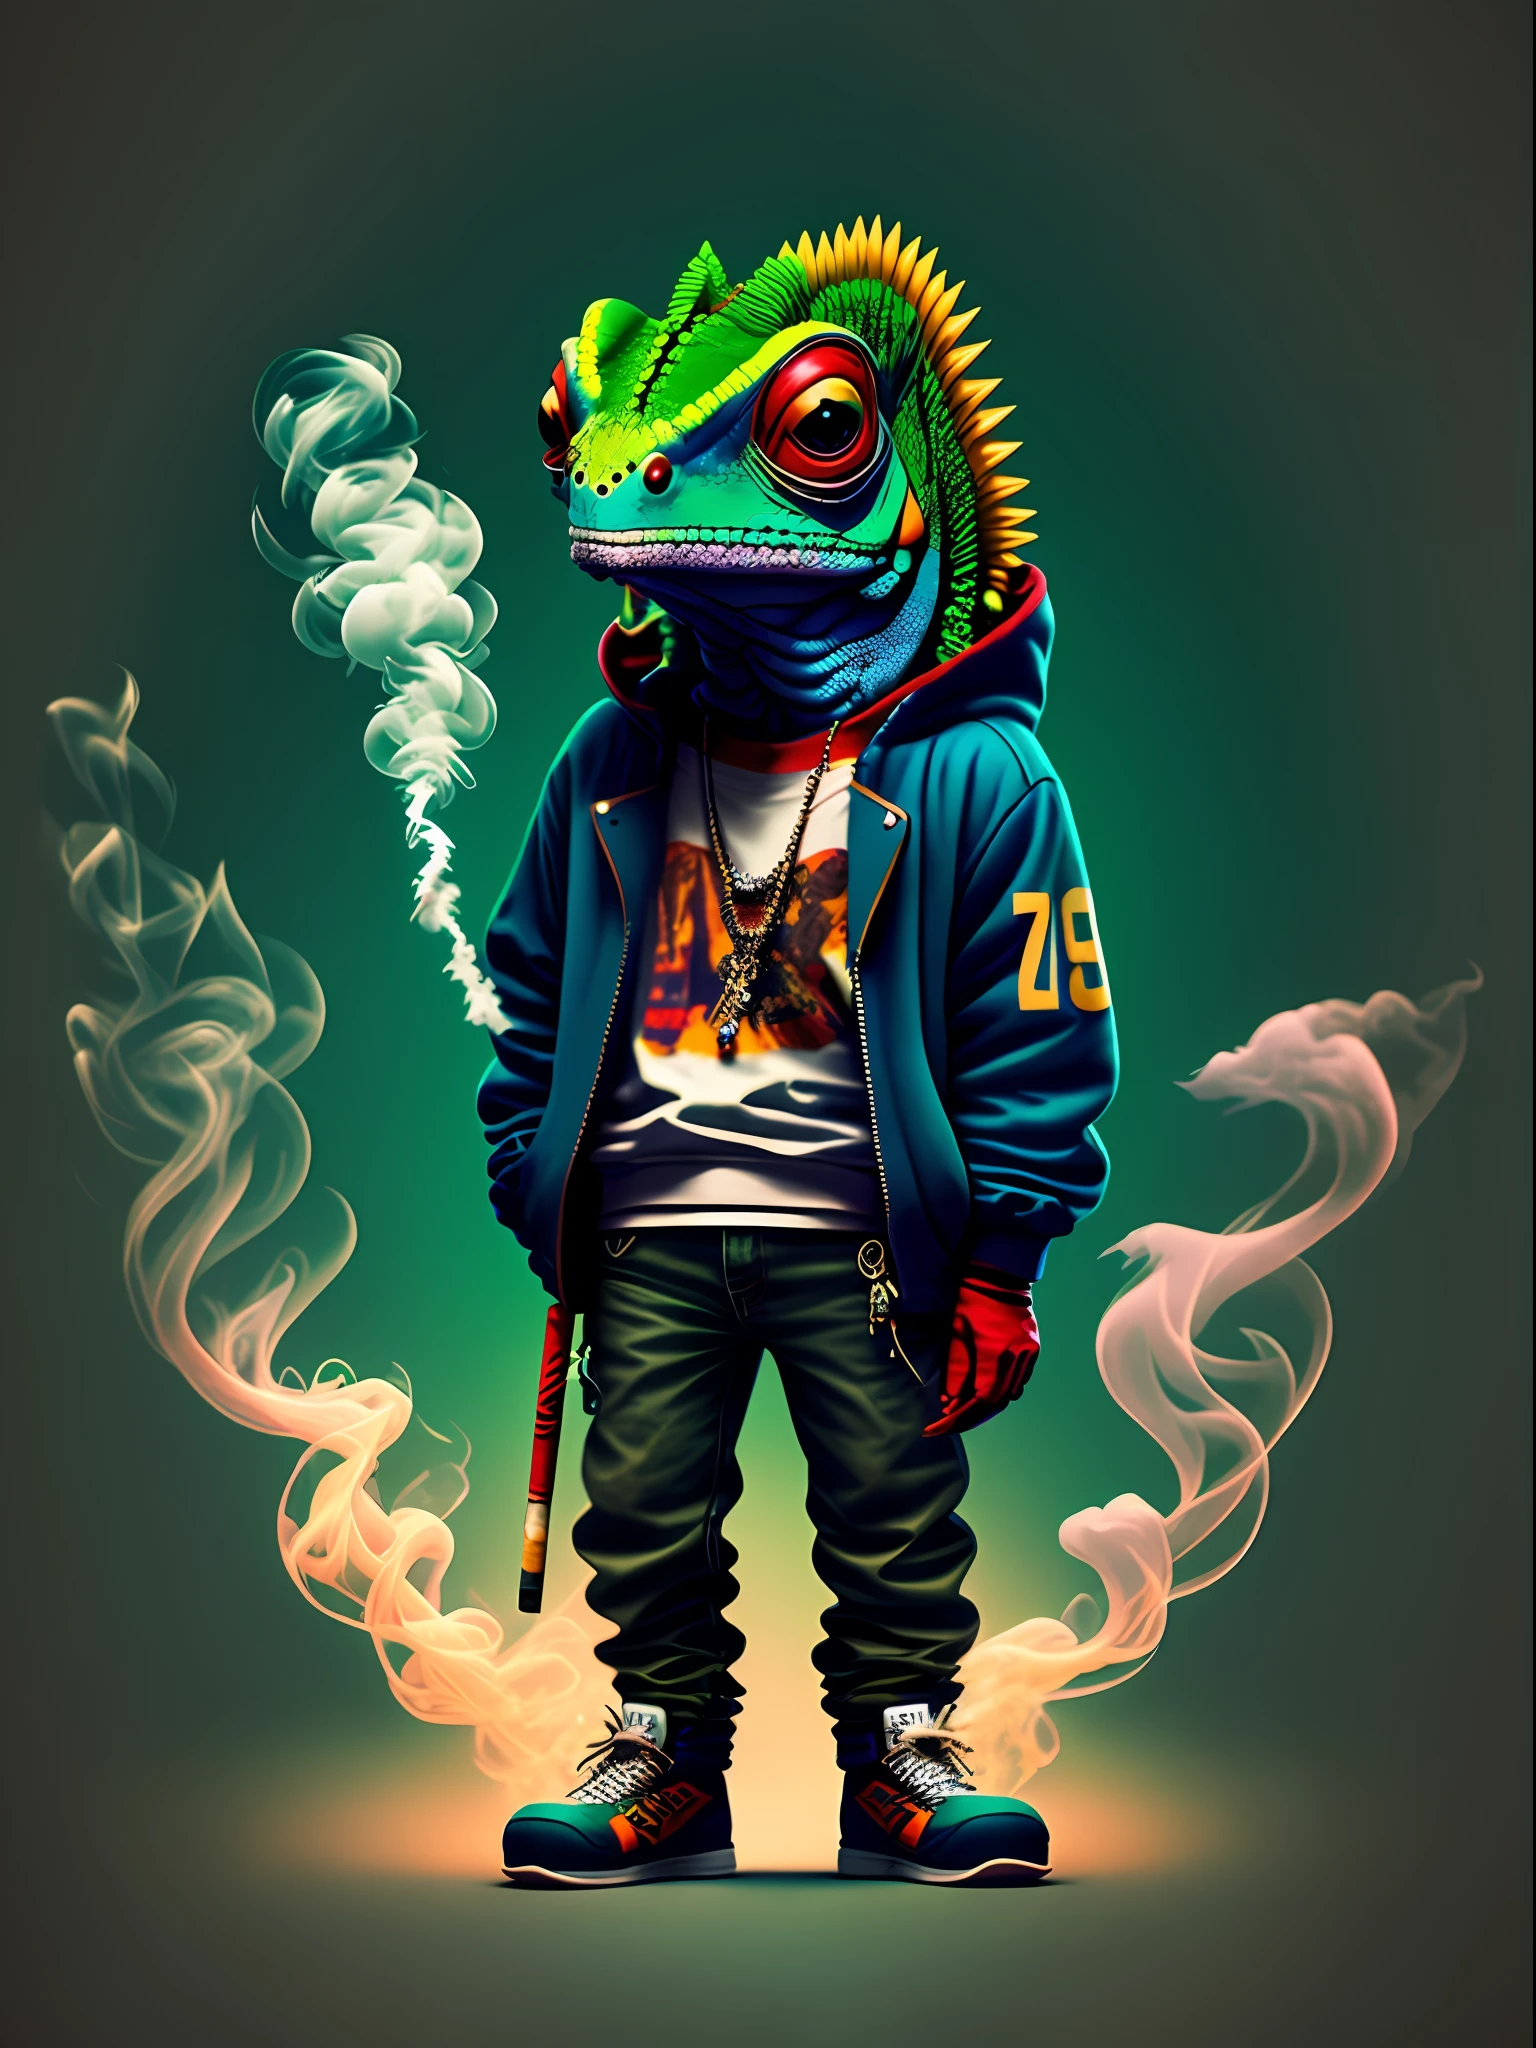 变色龙站立吸烟的图片, 穿着嘻哈风格的衣服, 90 年代风格